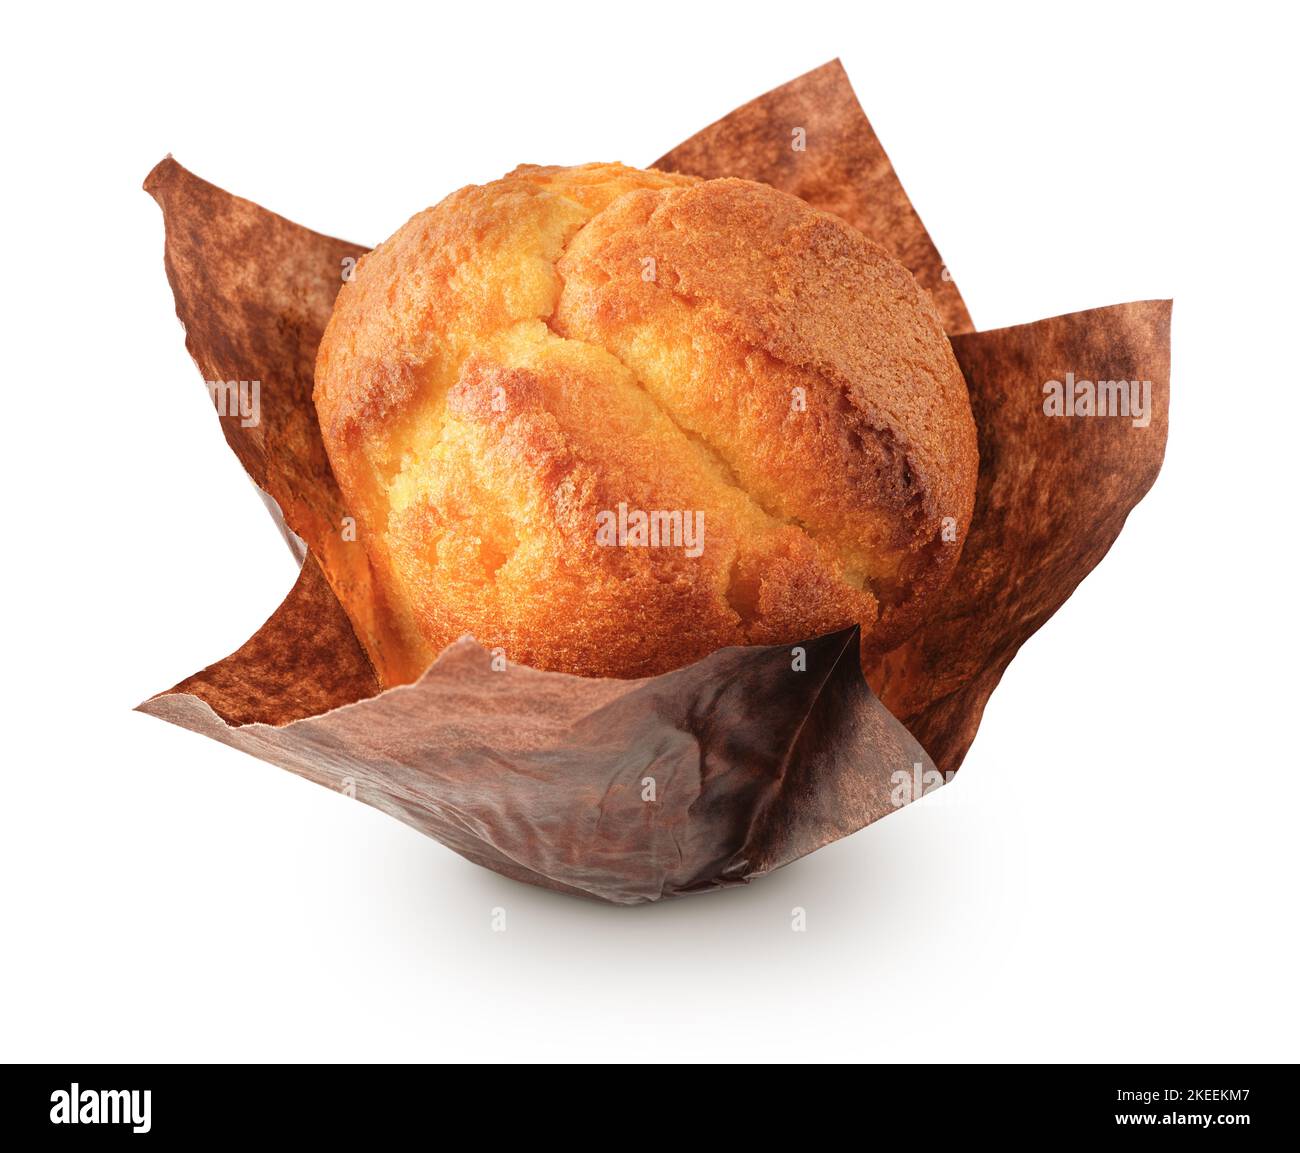 Un muffin à la vanille, ou cupcake, isolé sur fond blanc Banque D'Images